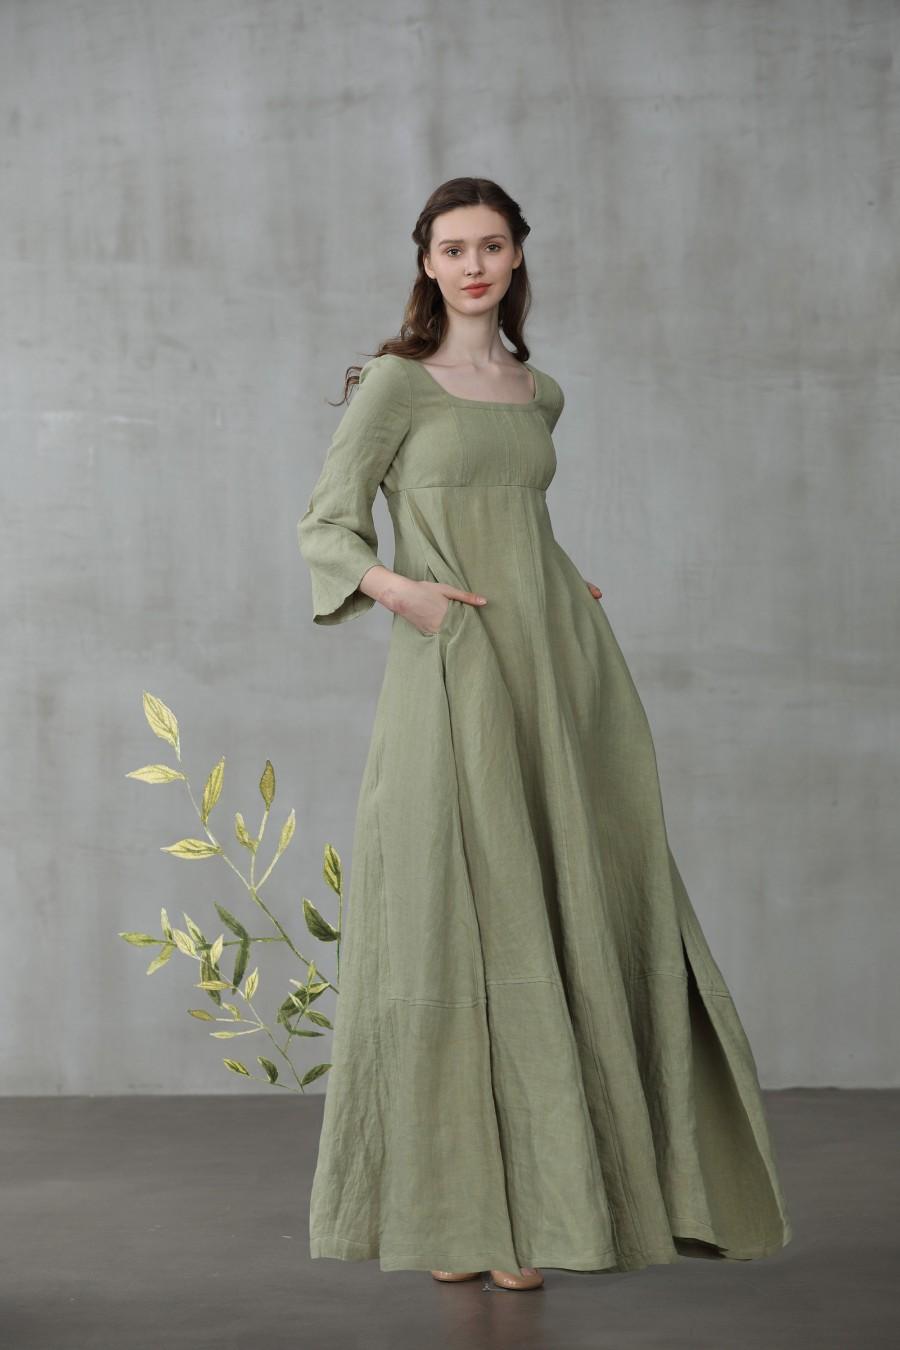 Hochzeit - Medieval dress, linen dress, maxi linen dress, puff sleeve dress, wedding dress, green dress, princess dress, Renaissance dress